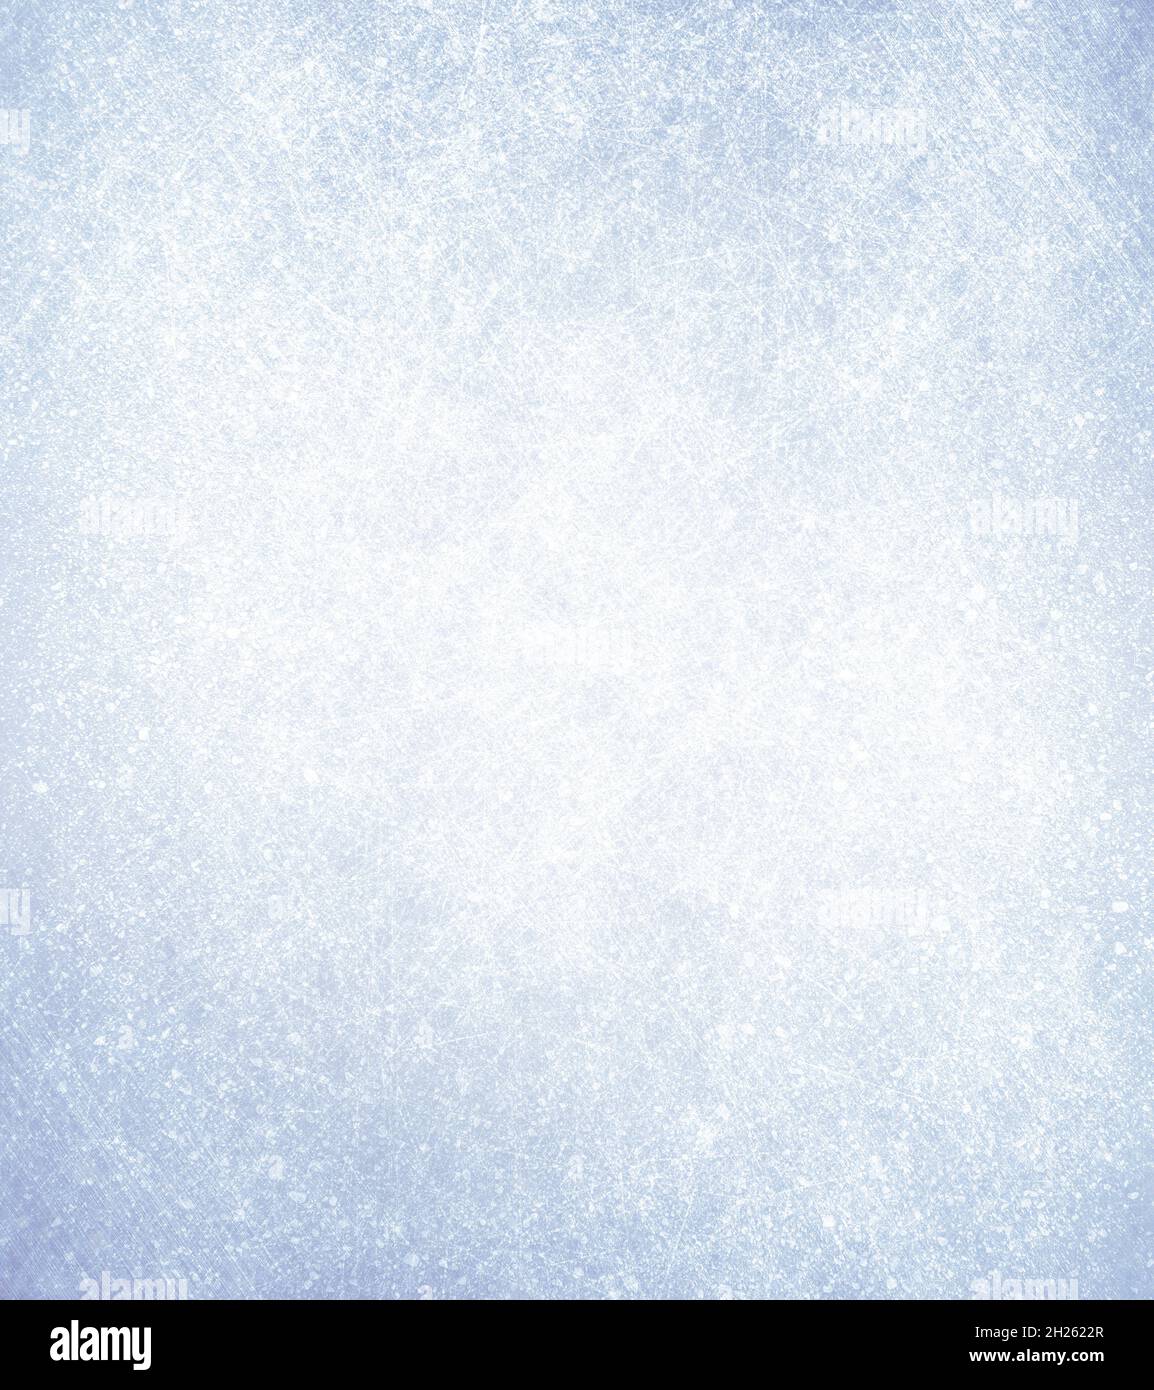 Gefrorener strukturierter Hintergrund - Wintermaterial Stockfoto